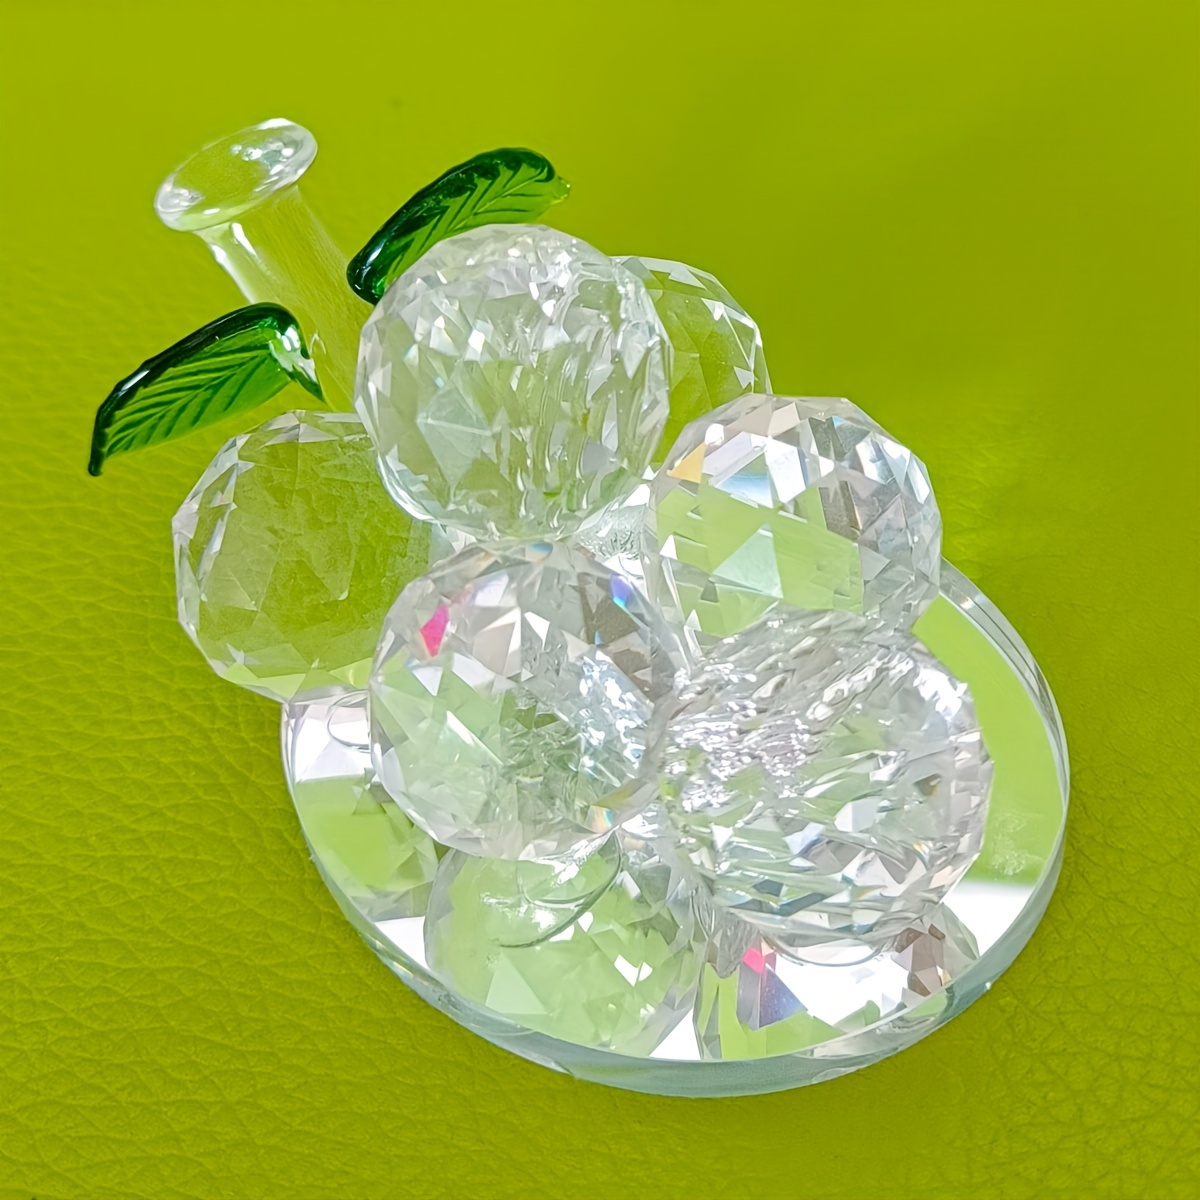 Adorno de Cristal en forma de Arbol con Frutos - VicenZam